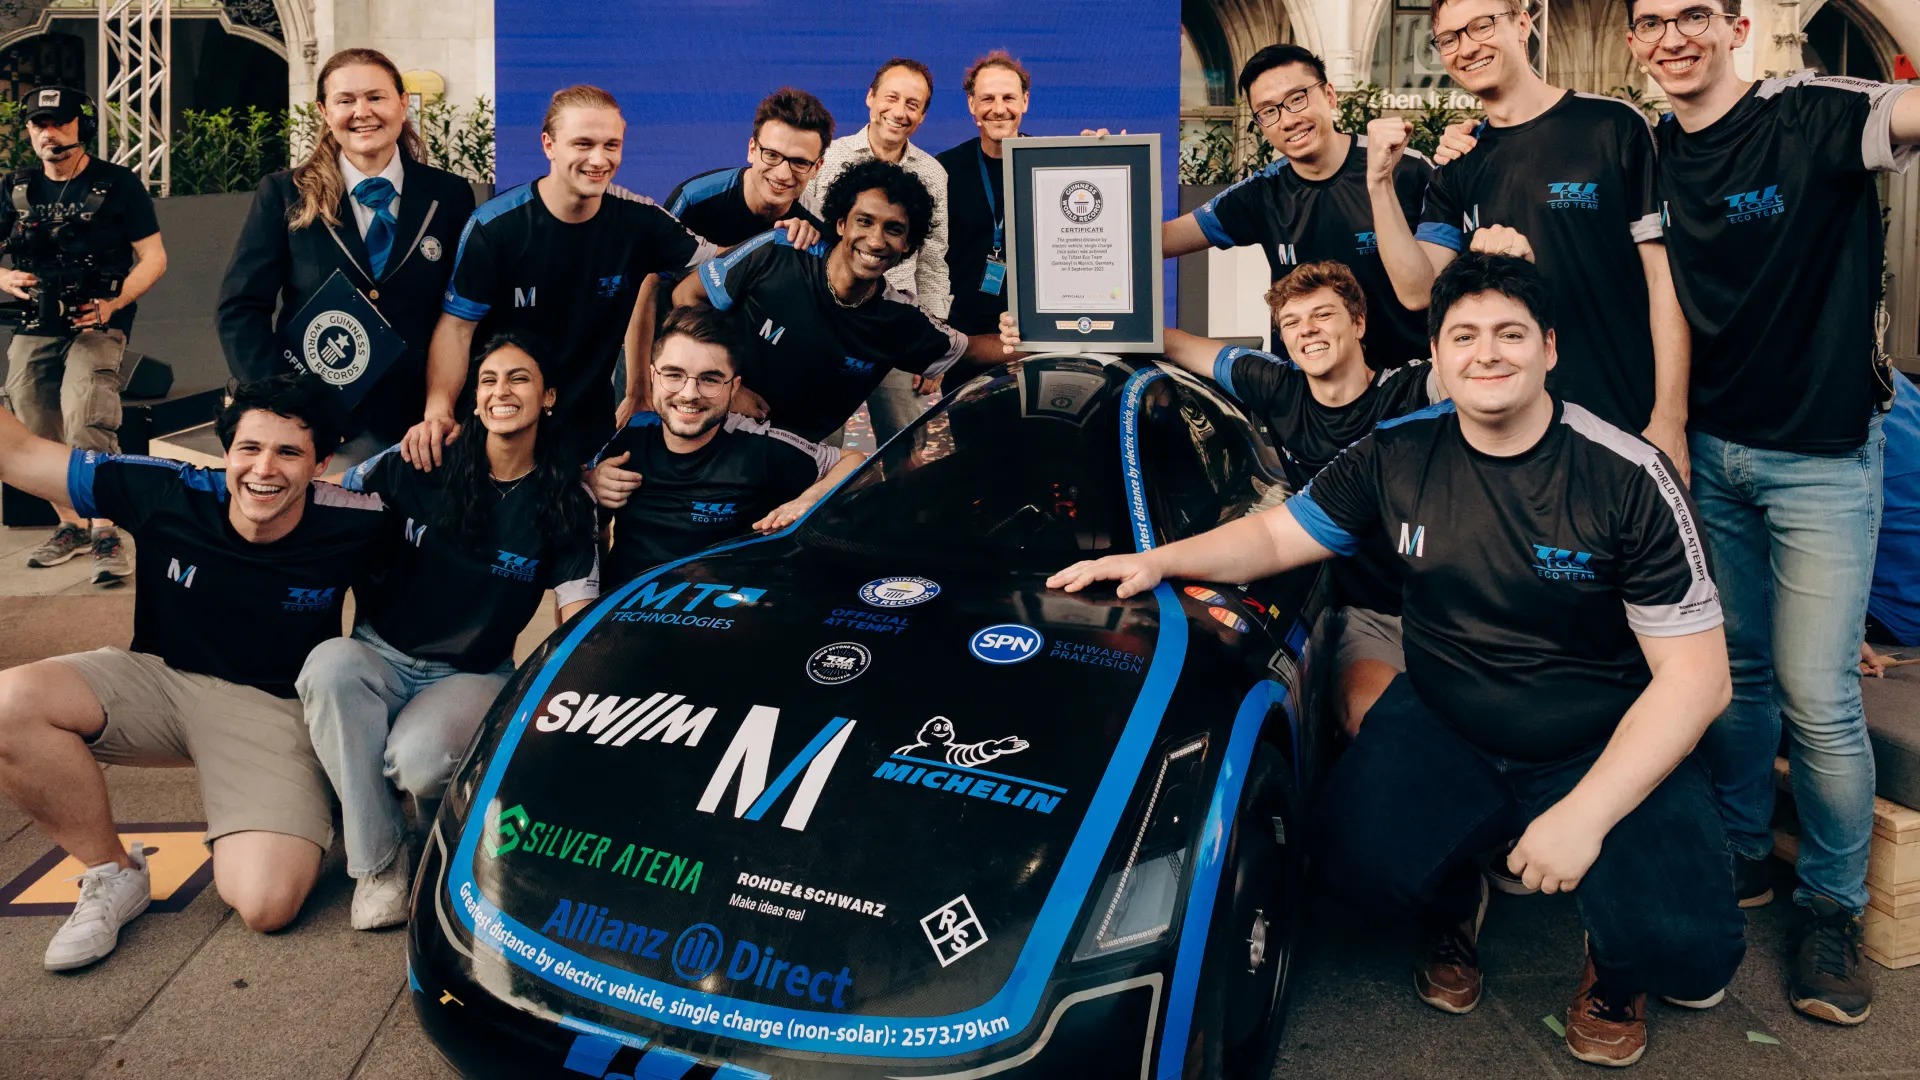 Nhóm sinh viên tự chế xe điện chạy 2.600 km một lần sạc, lập kỷ lục Guinness - Ảnh 1.